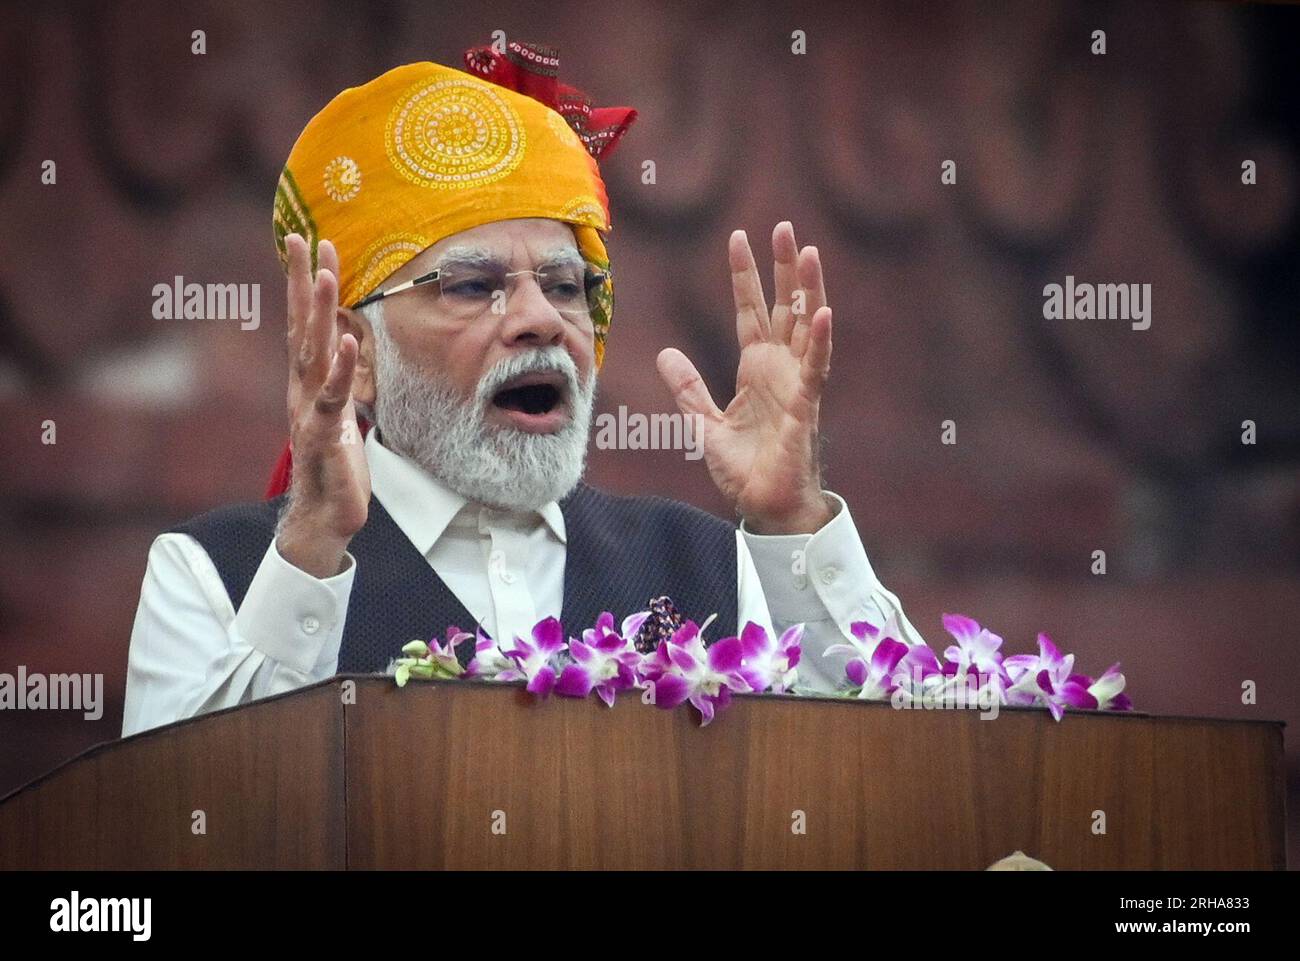 NEW DELHI, INDIA - AUGUST 15: Prime Minister Narendra Modi